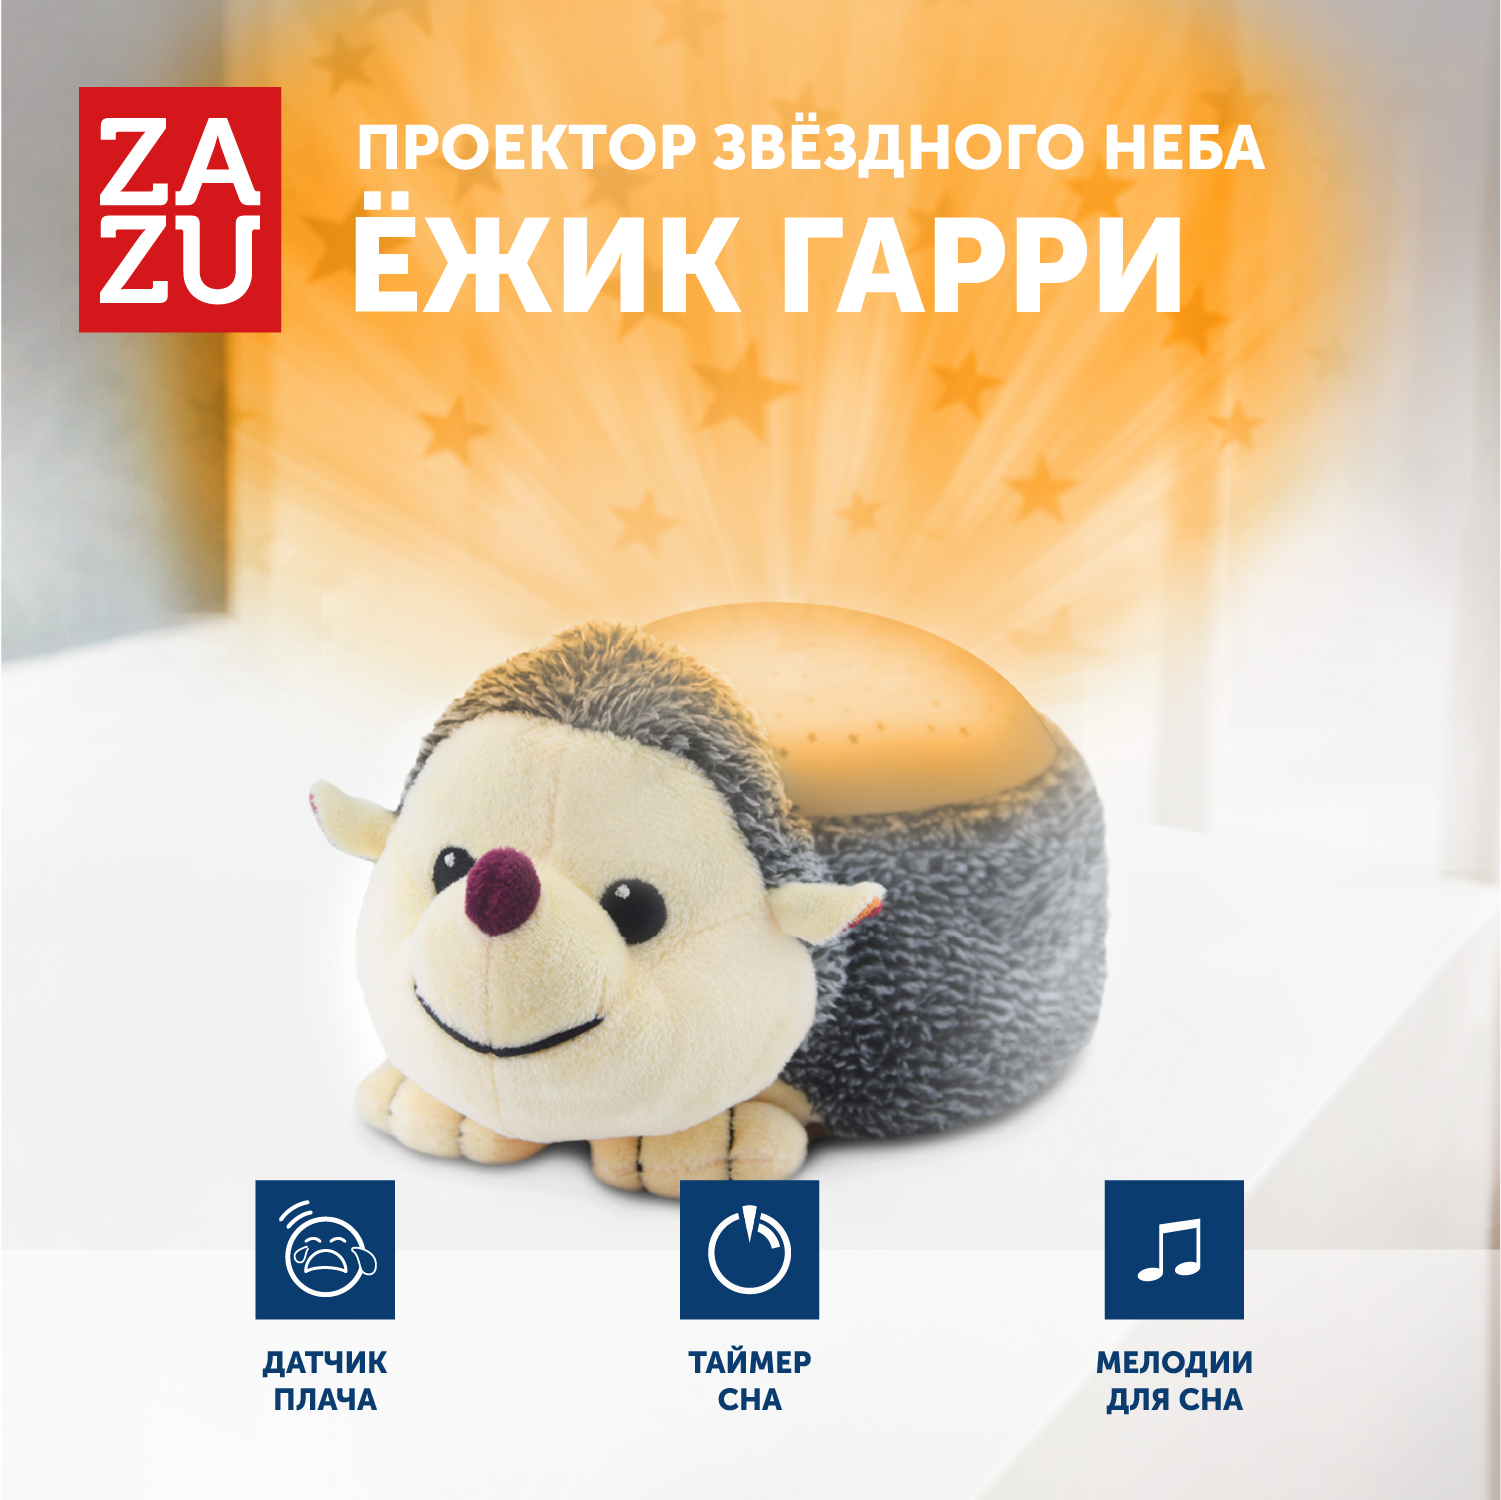 Музыкальная мягкая игрушка проектор ZAZU Ёжик Гарри для малышей